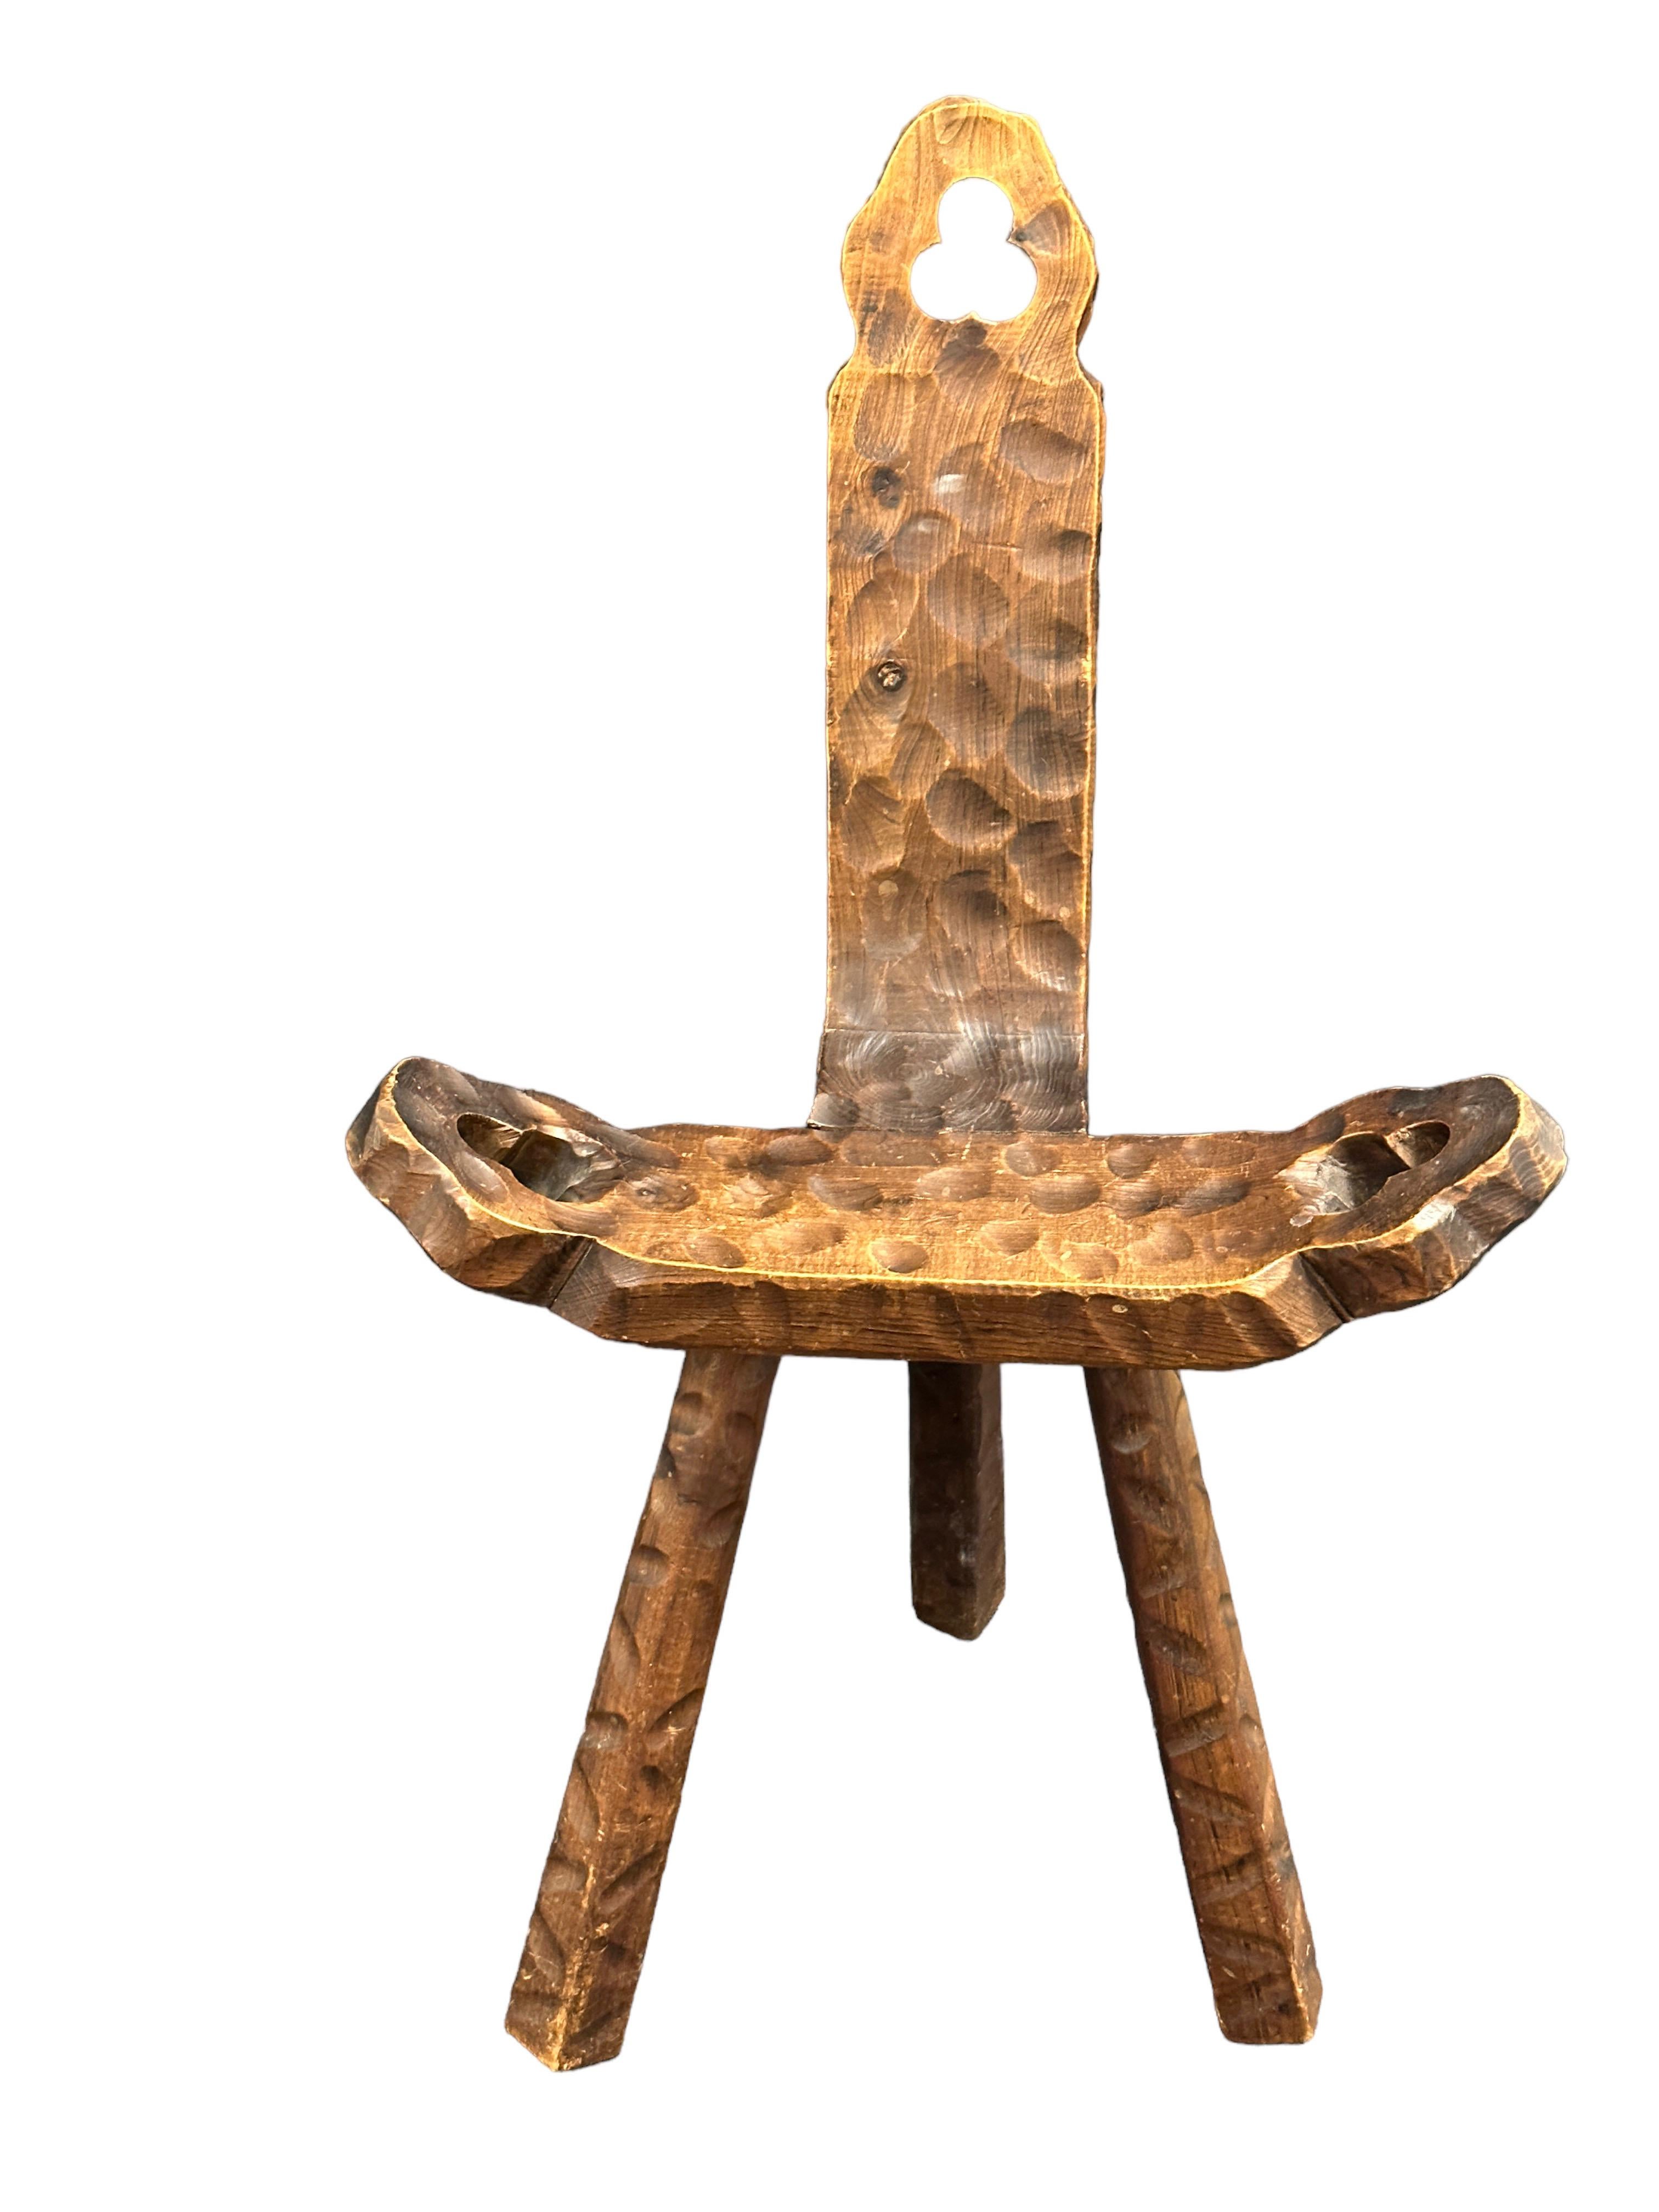 Interessanter dreibeiniger Holzstuhl im Brutalismus aus Spanien. Gekerbte Löcher in der Kopfstütze und in beiden Armlehnen. Wurde früher als Entbindungsstuhl verwendet. Ein großartiges Stück funktionaler Skulptur. Guter Zustand des Holzes. Ein Bein